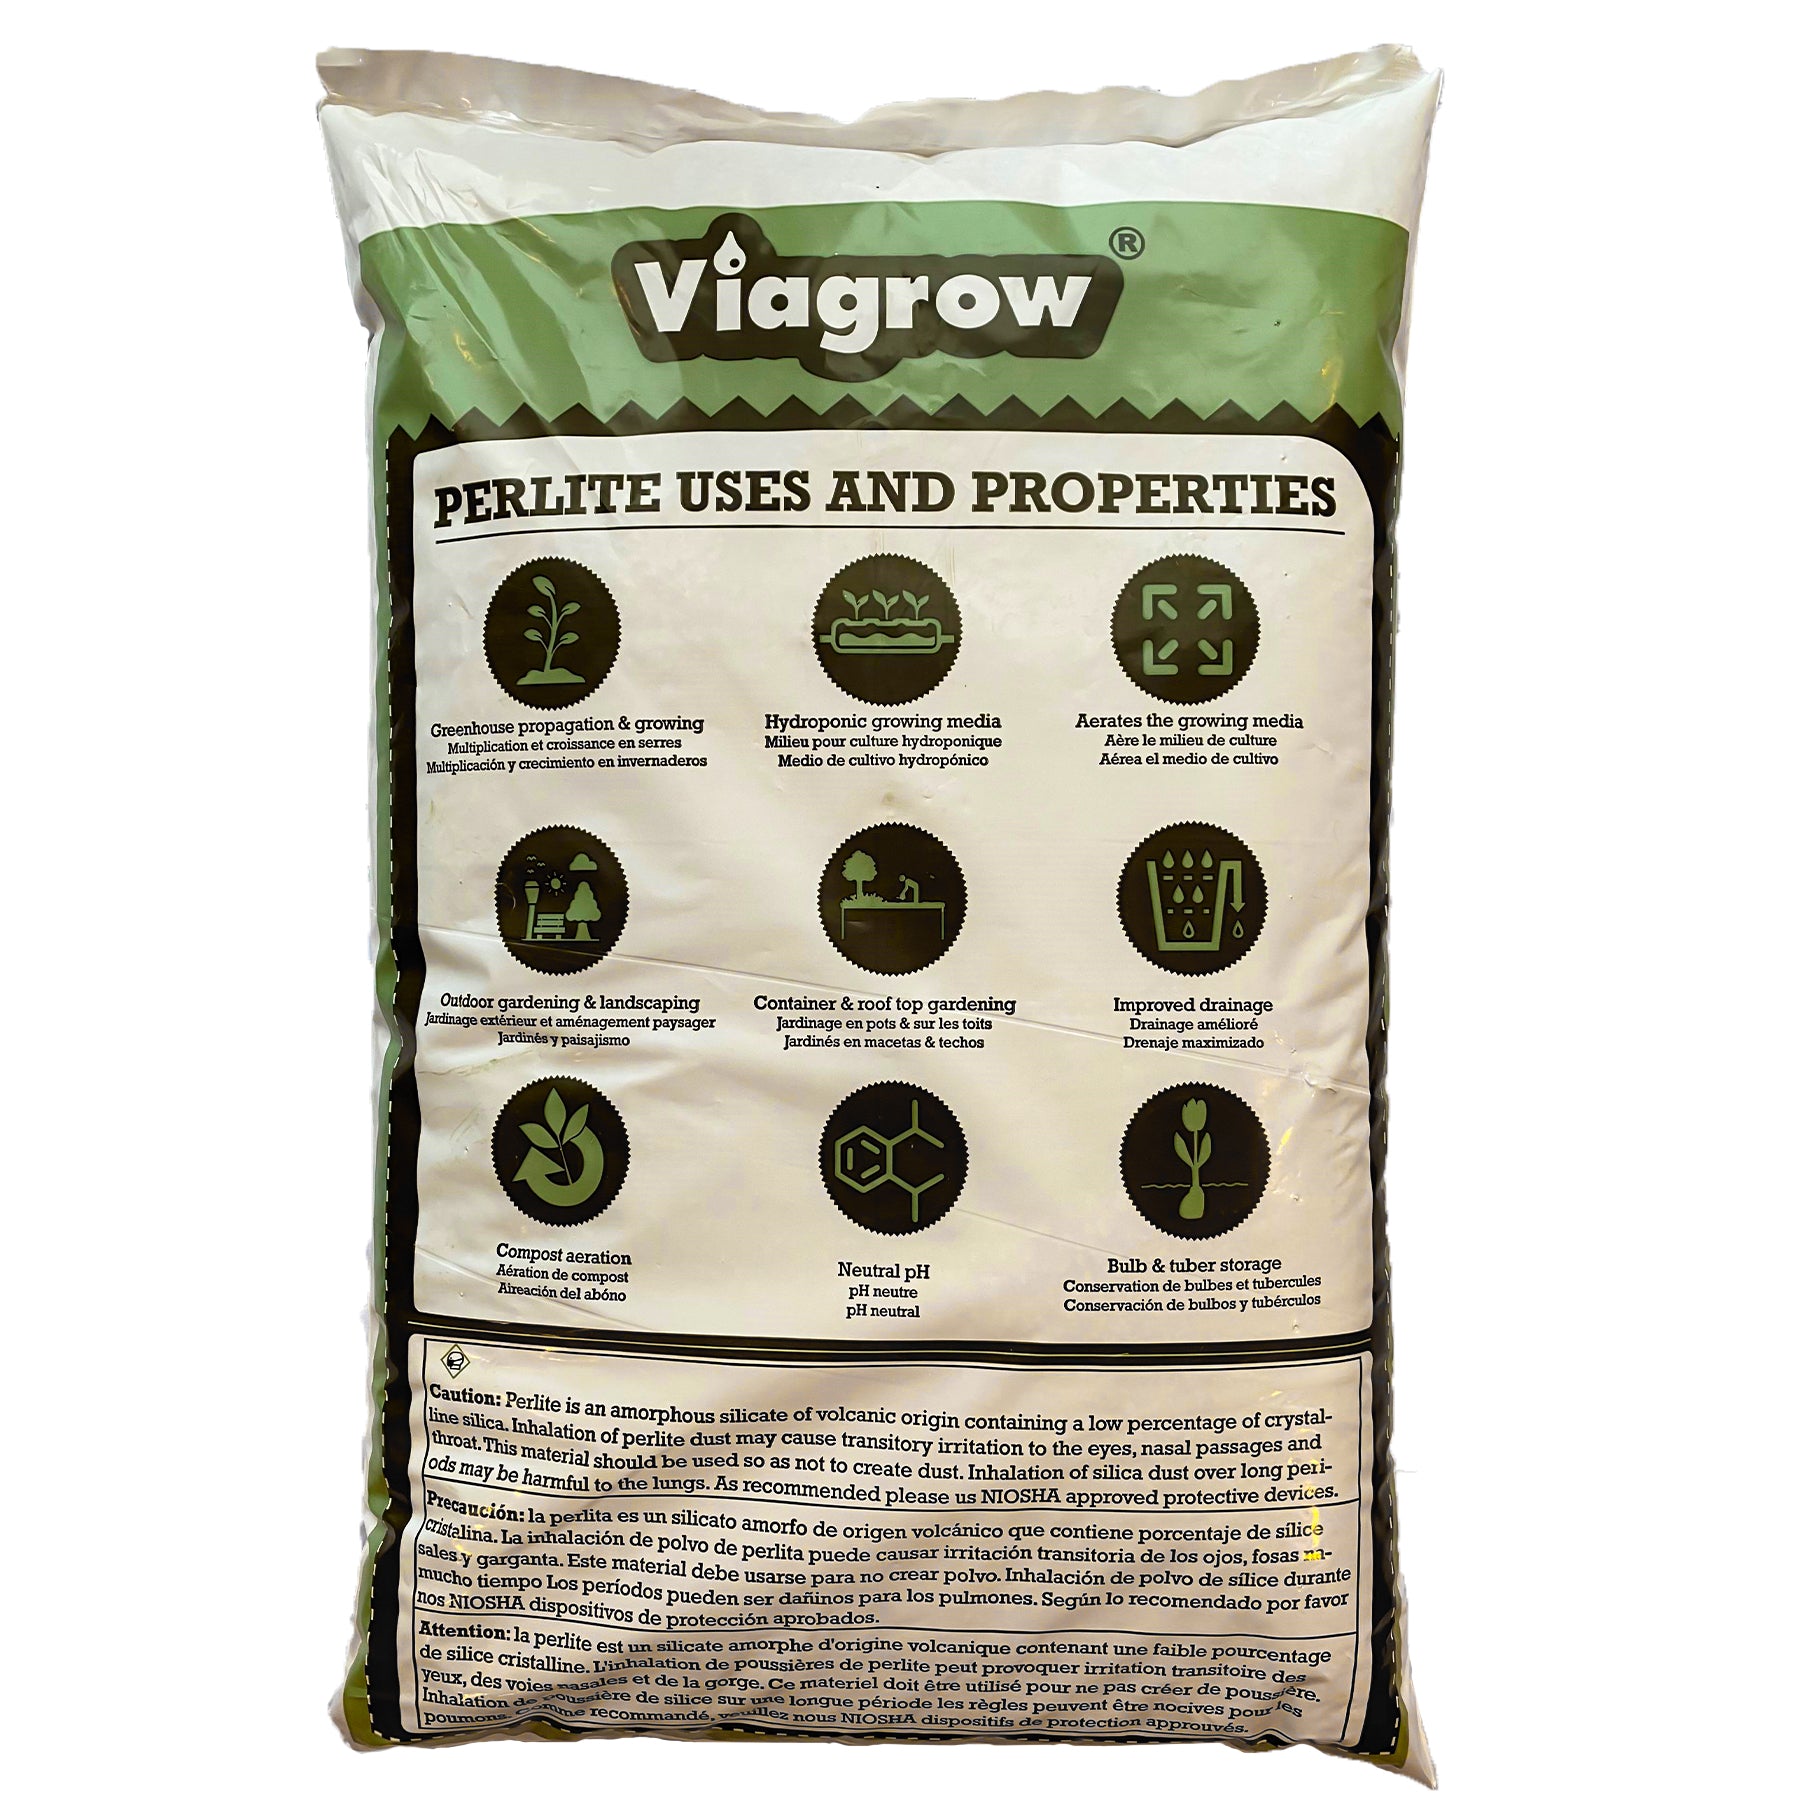 Viagrow Perlite de qualité grossière et épaisse, 80 sacs, 1 pied cube / 29,9 pintes / 28 litres / 7,5 gallons / 3,63 kg